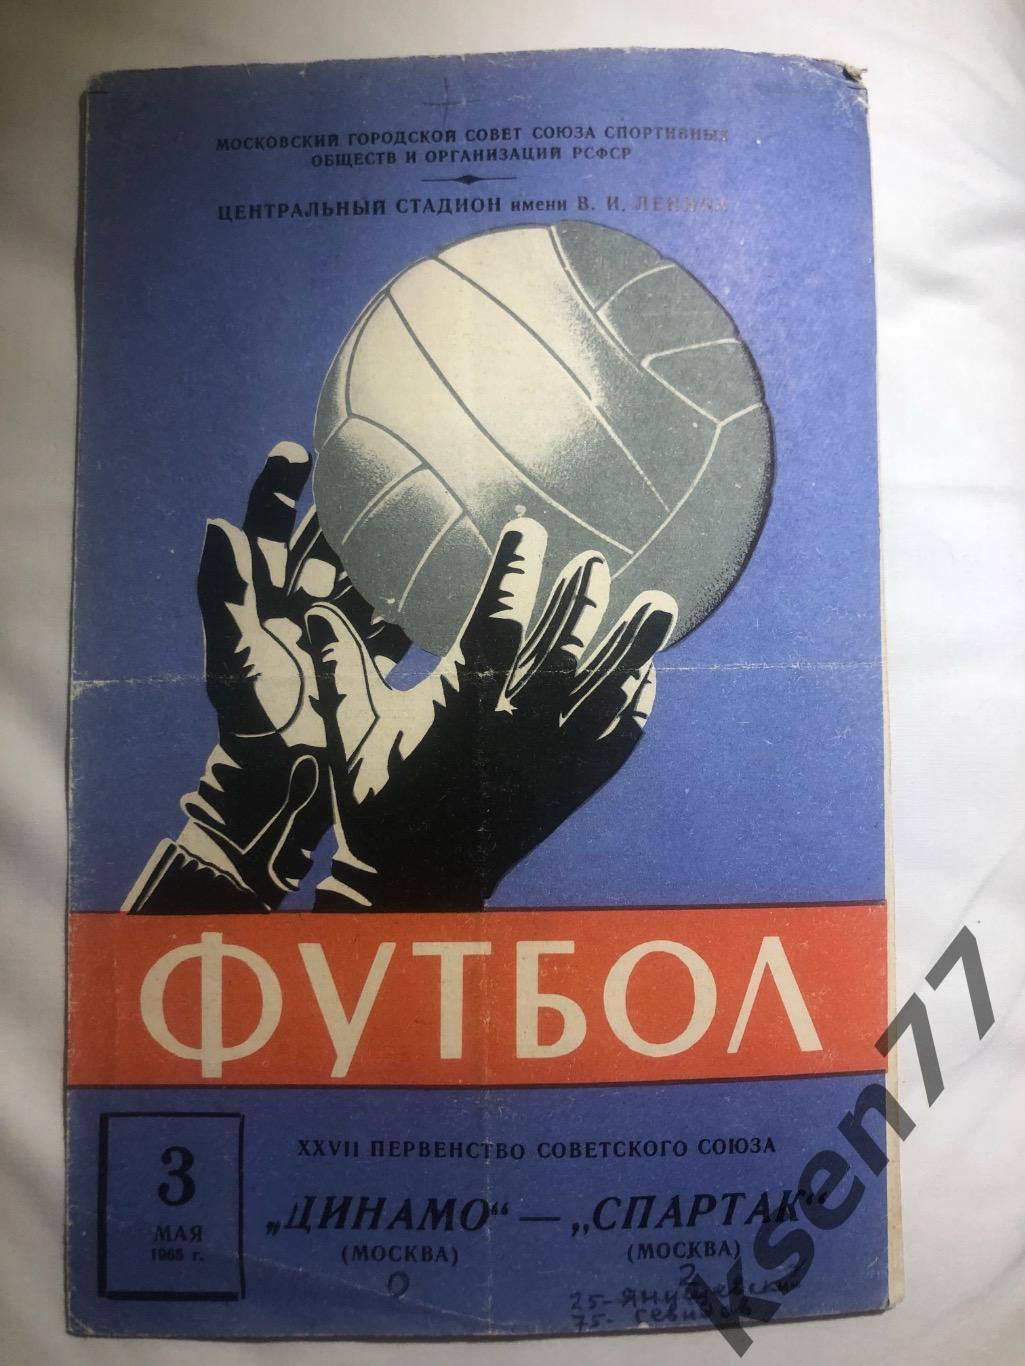 Спартак Москва - Динамо Москва - 03.05.1965.